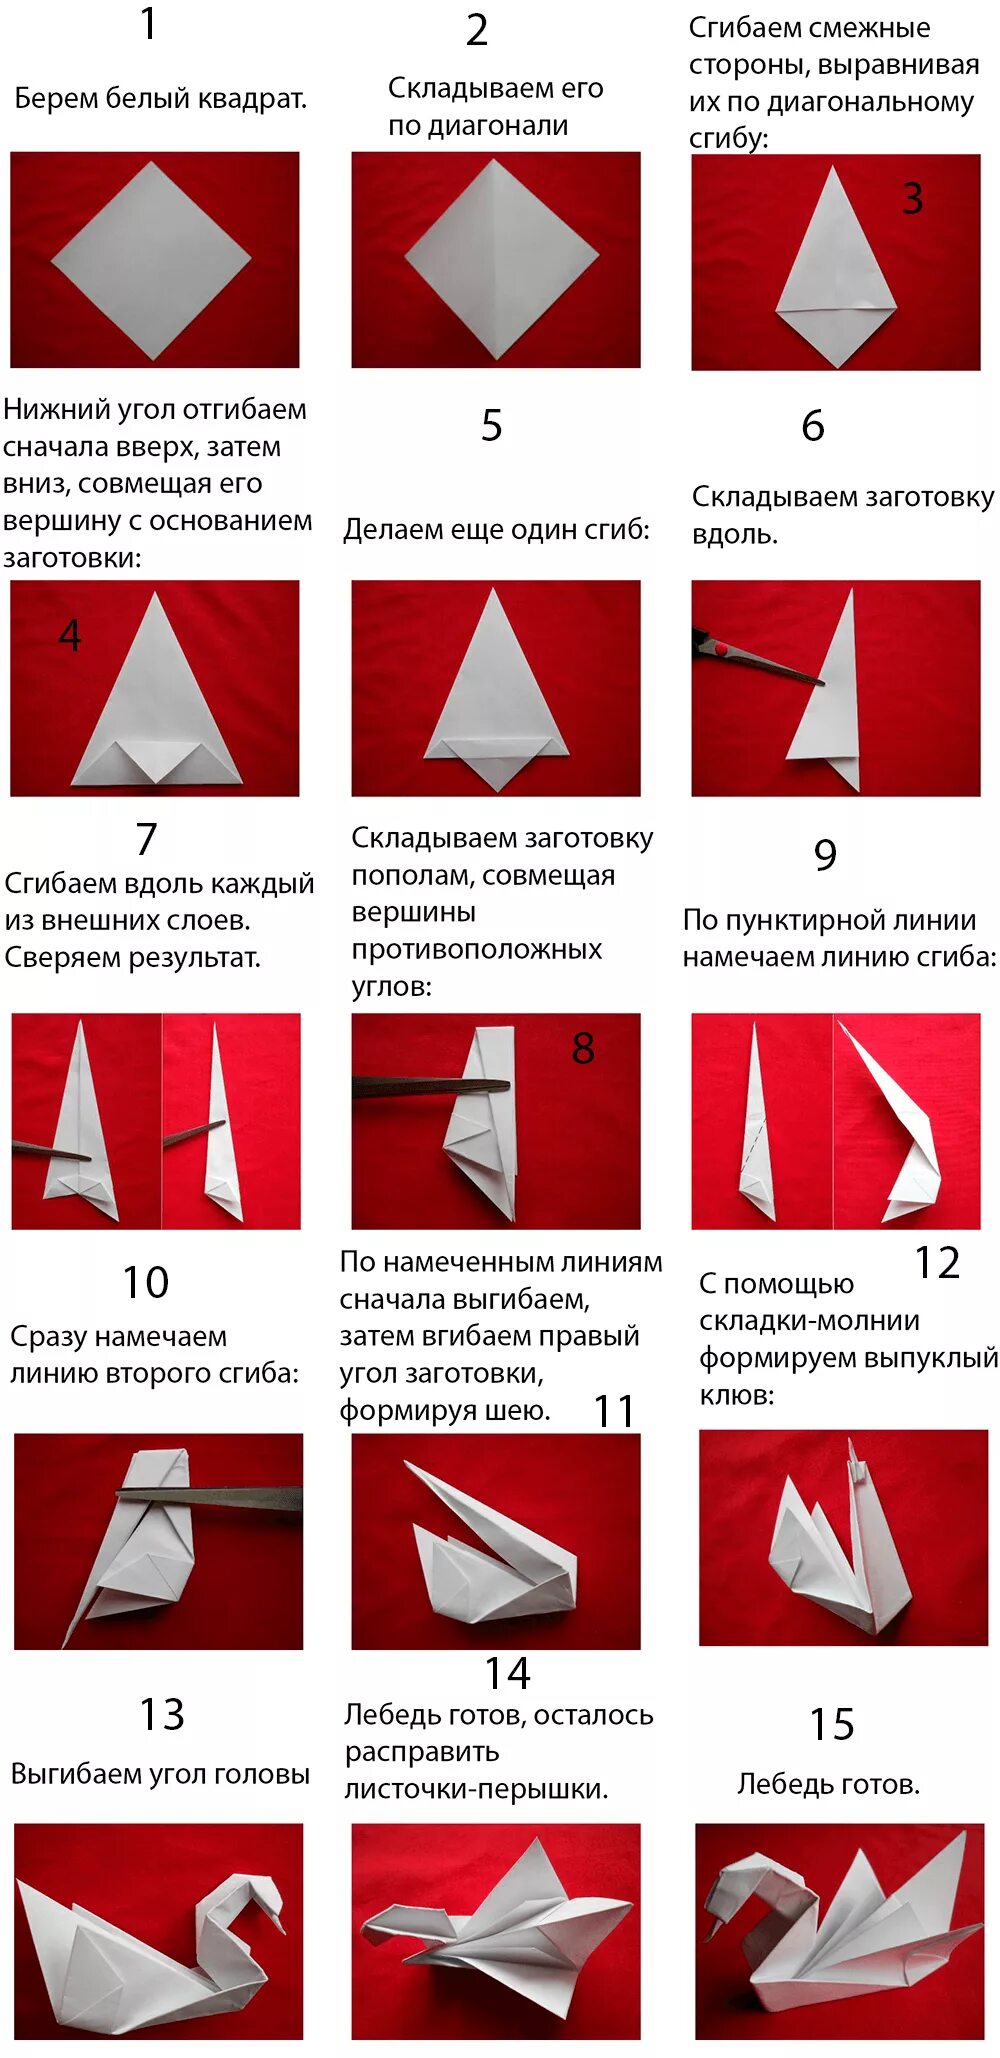 Лебедь из бумаги инструкция. Оригами лебедь пошагово. Оригами лебедь из бумаги а4 пошагово. Бумажный лебедь оригами пошаговая инструкция. Оригами из бумаги лебедь пошаговая схема.